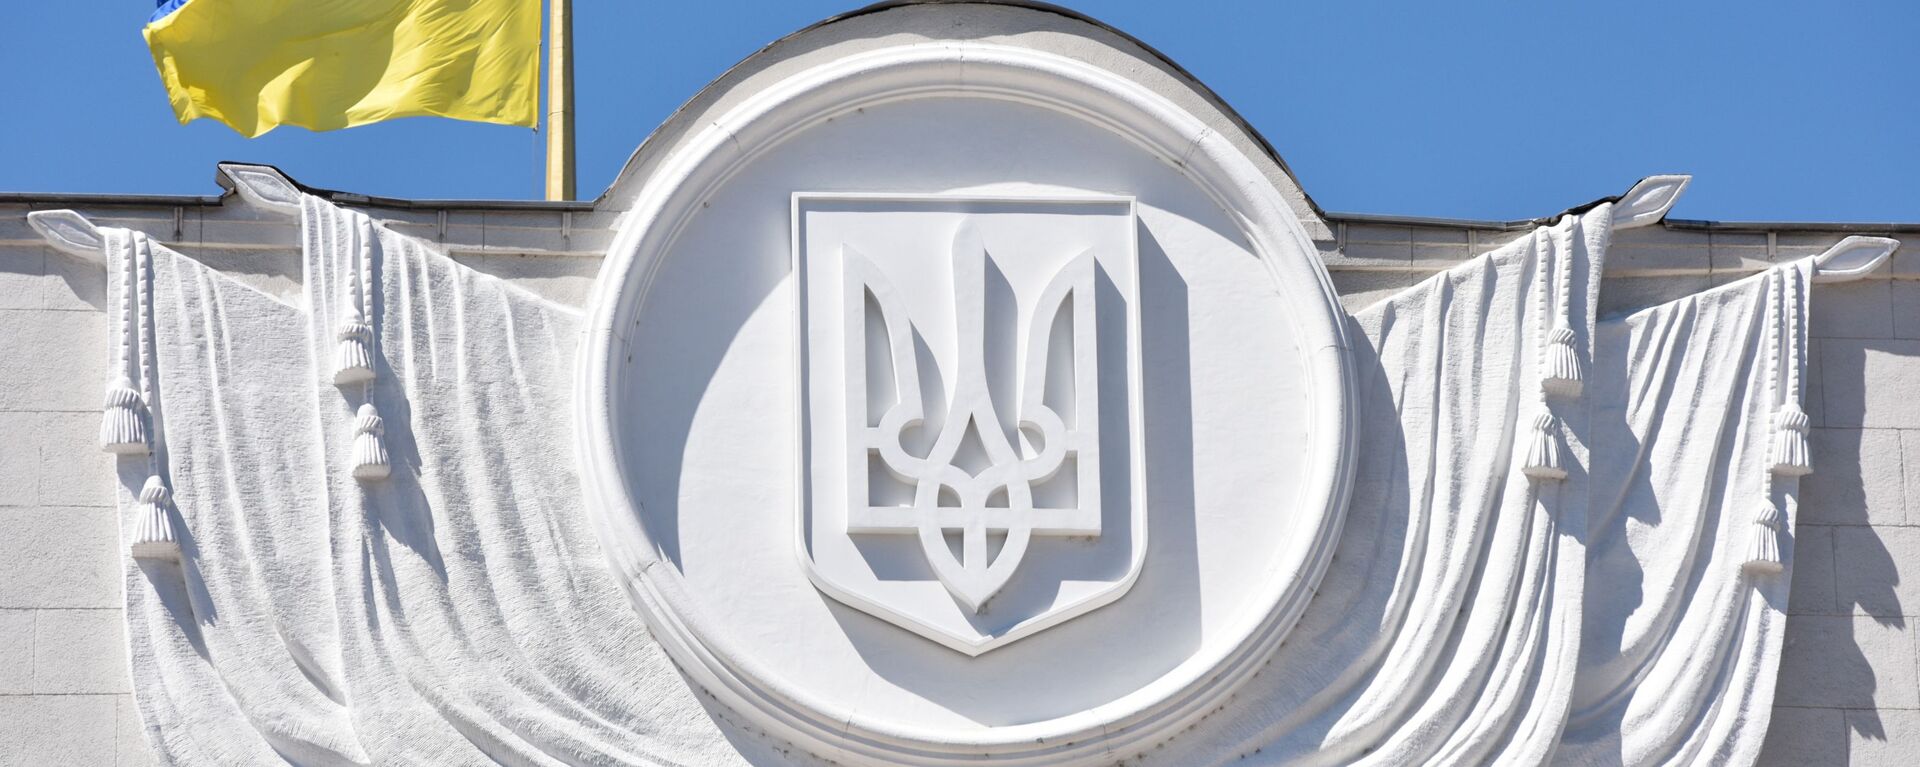 Флаг Украины на здании Верховной рады в Киеве - Sputnik Latvija, 1920, 25.11.2019